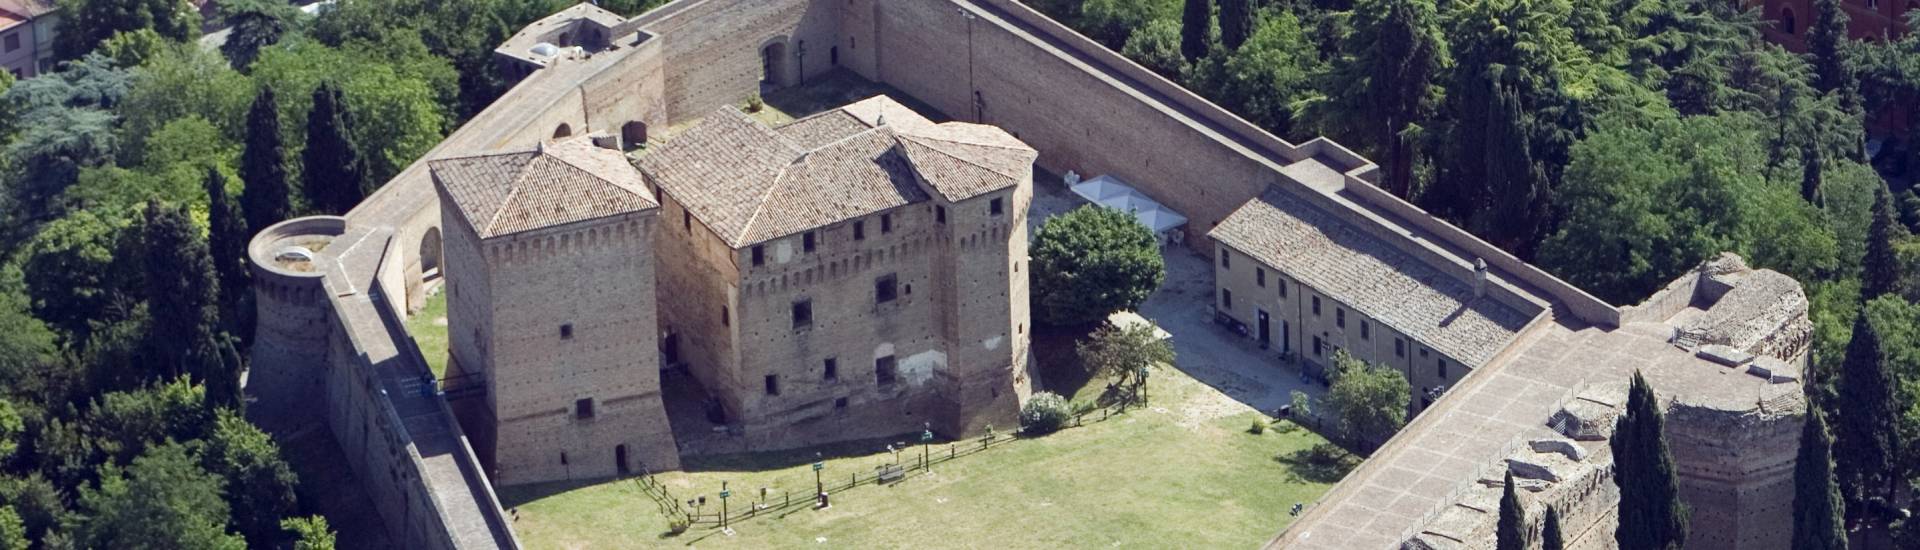 Rocca Malatestiana - Rocca malatestiana Cesena- foto aerea foto di: |Michele Buda| - Archivio Uff. Prom.Turistica Comune di Cesena